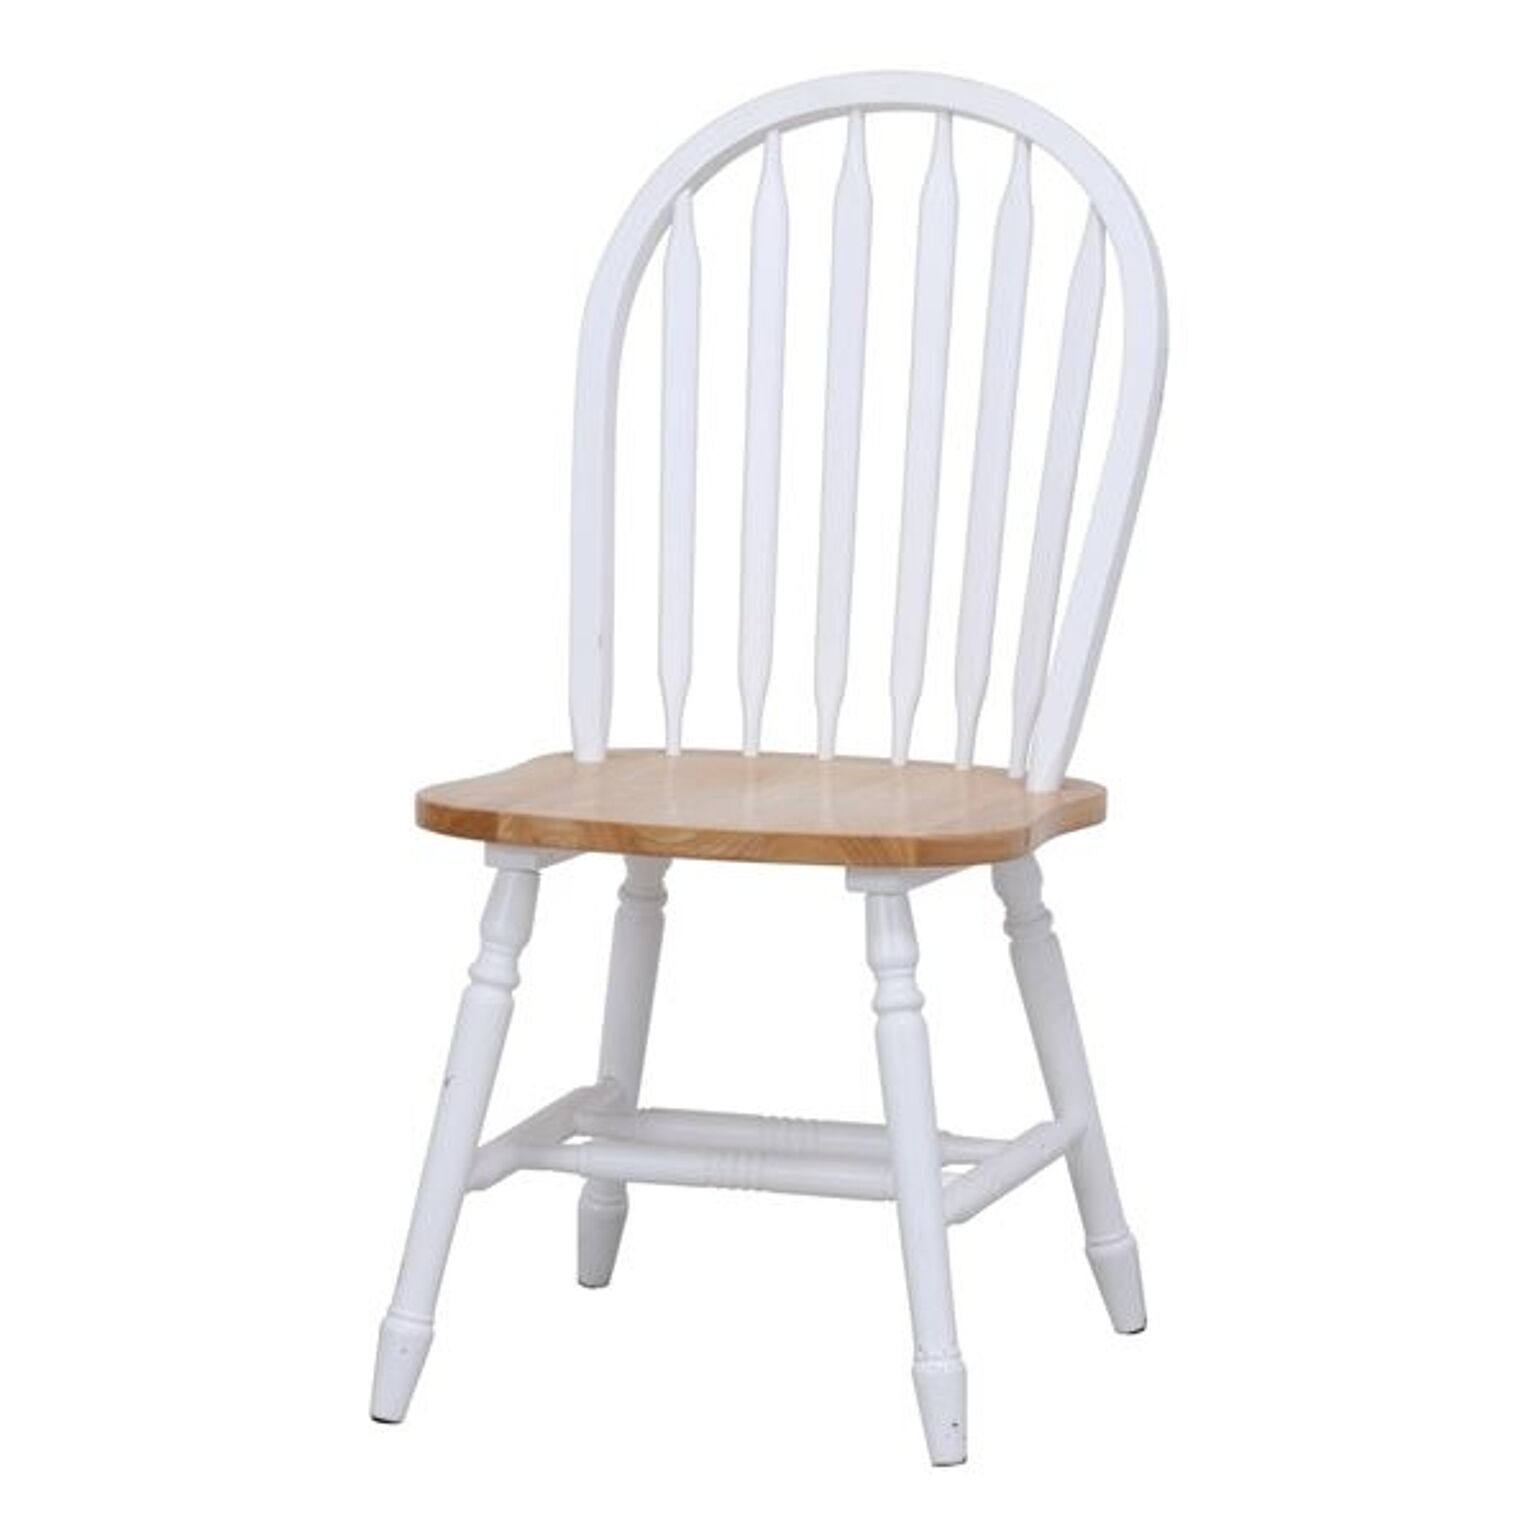 ダイニングチェア 食卓椅子 幅44.5cm ホワイト×ナチュラル 2個セット 木製 組立品 リビング 在宅ワーク【代引不可】